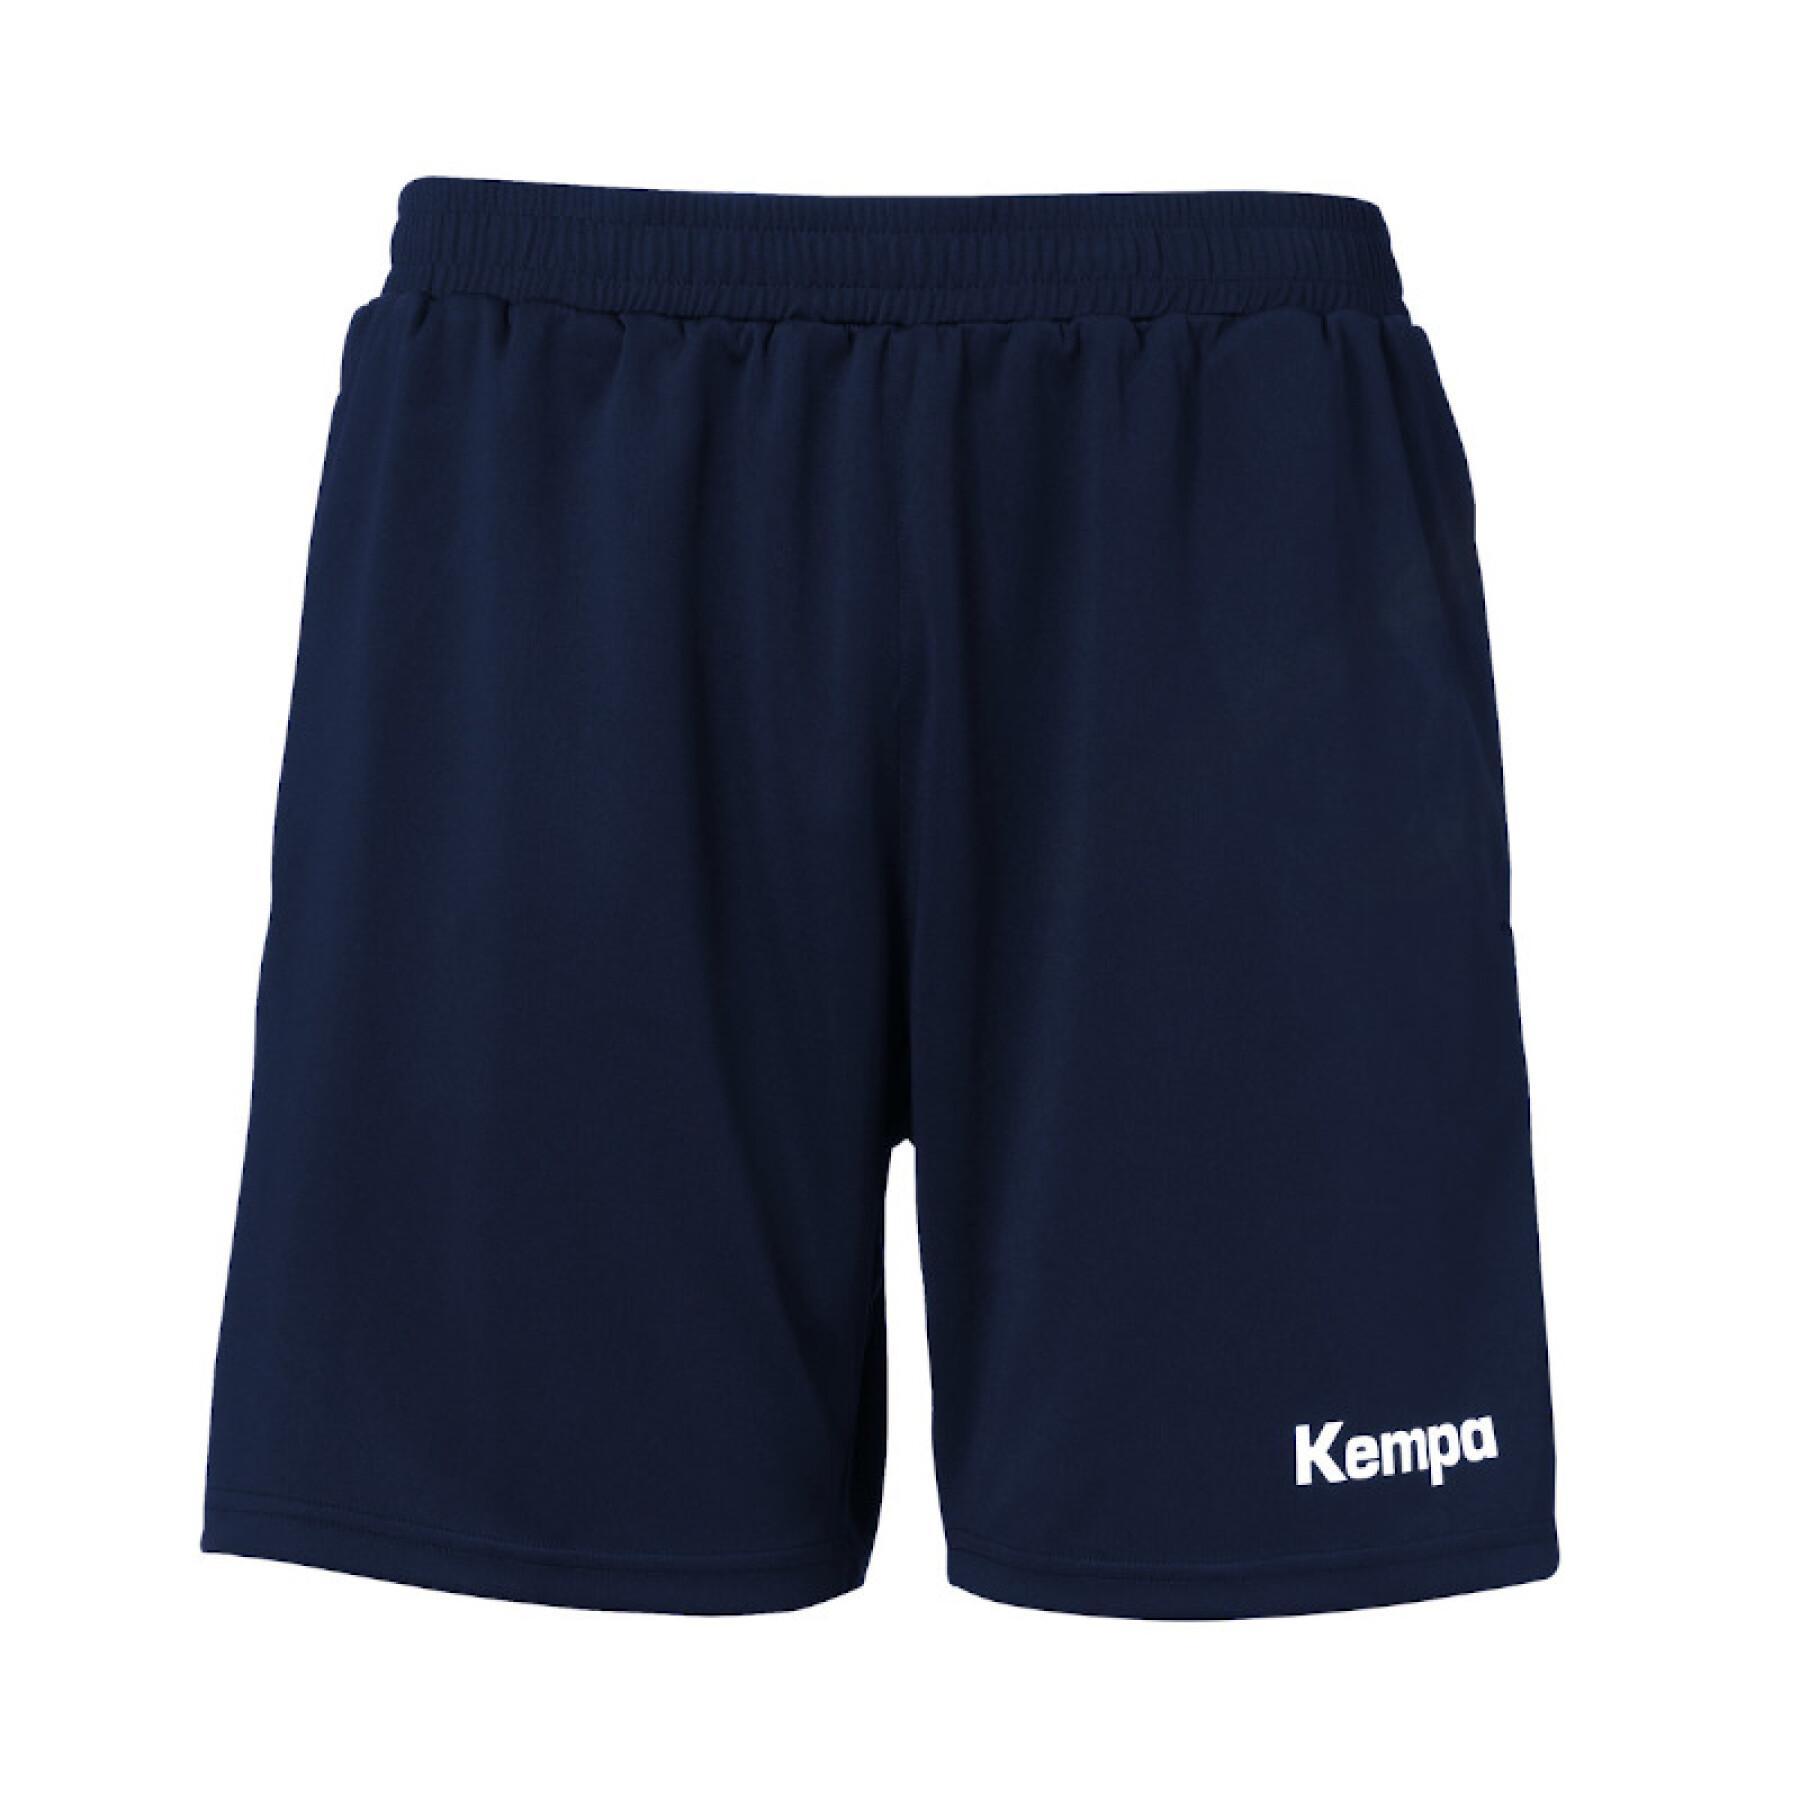 Short with pocket for children Kempa